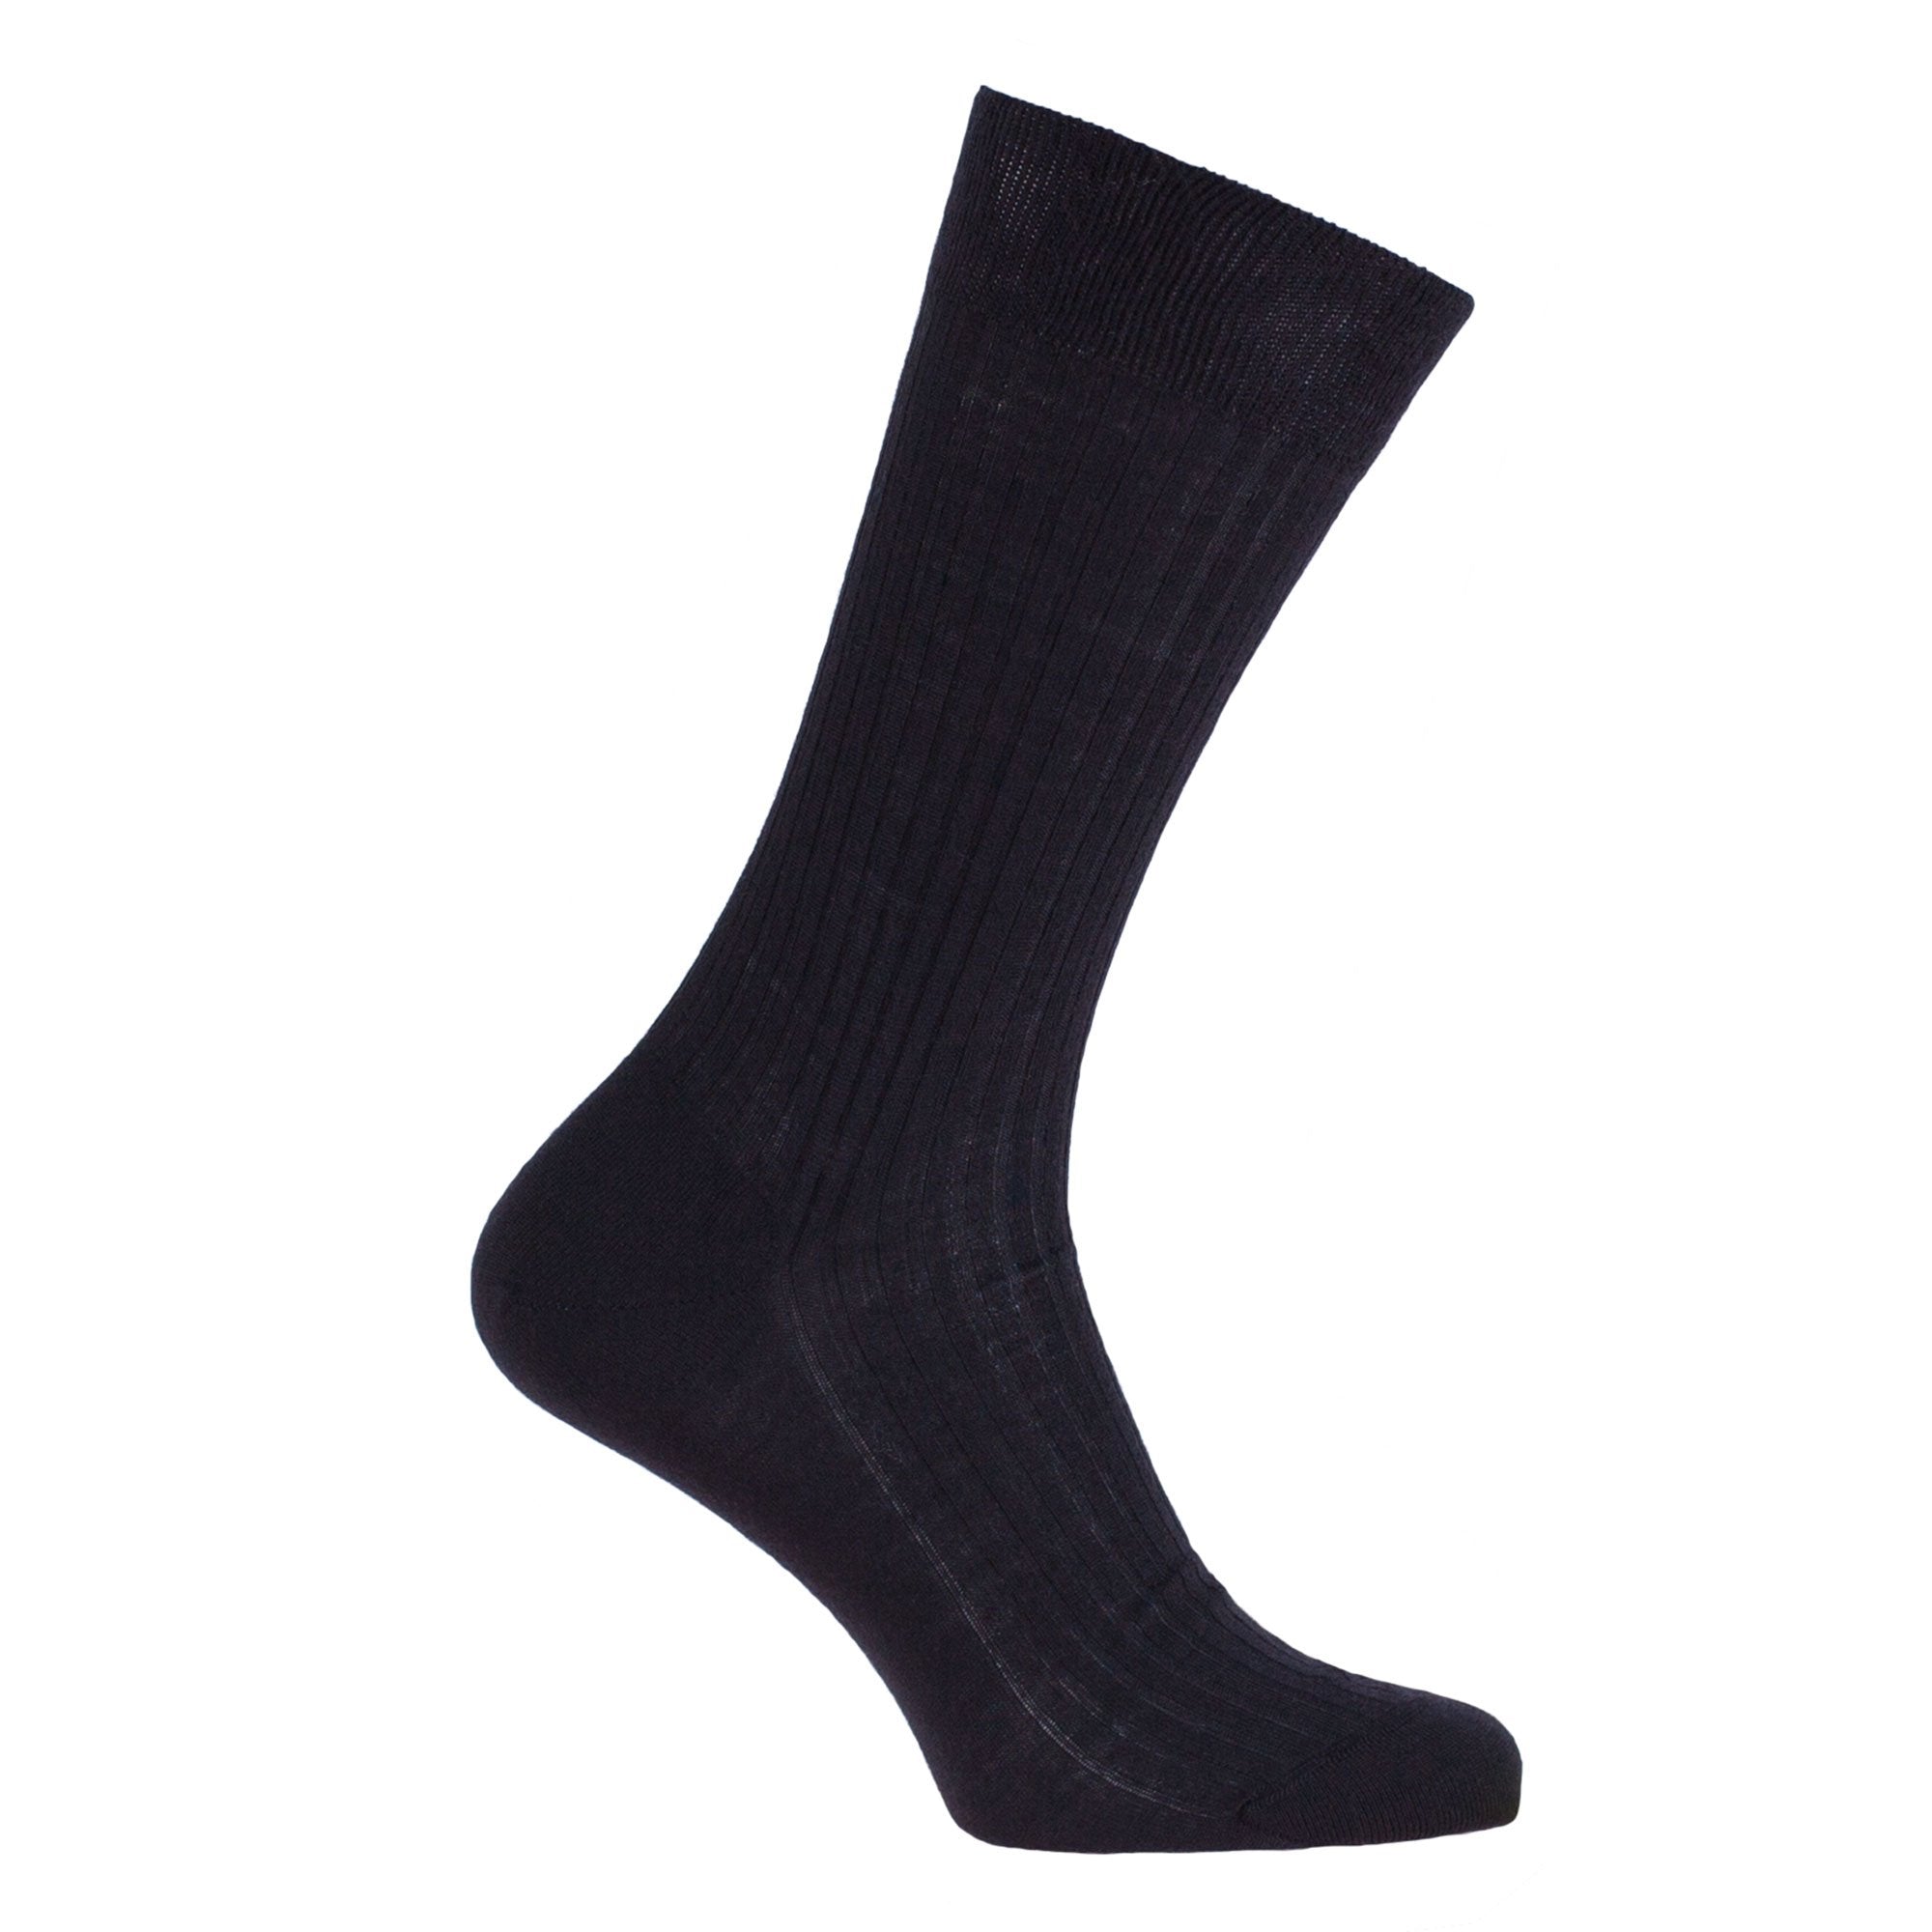 Merino Socks | 100% Merino Wool Tailored Sock | The Wool Company